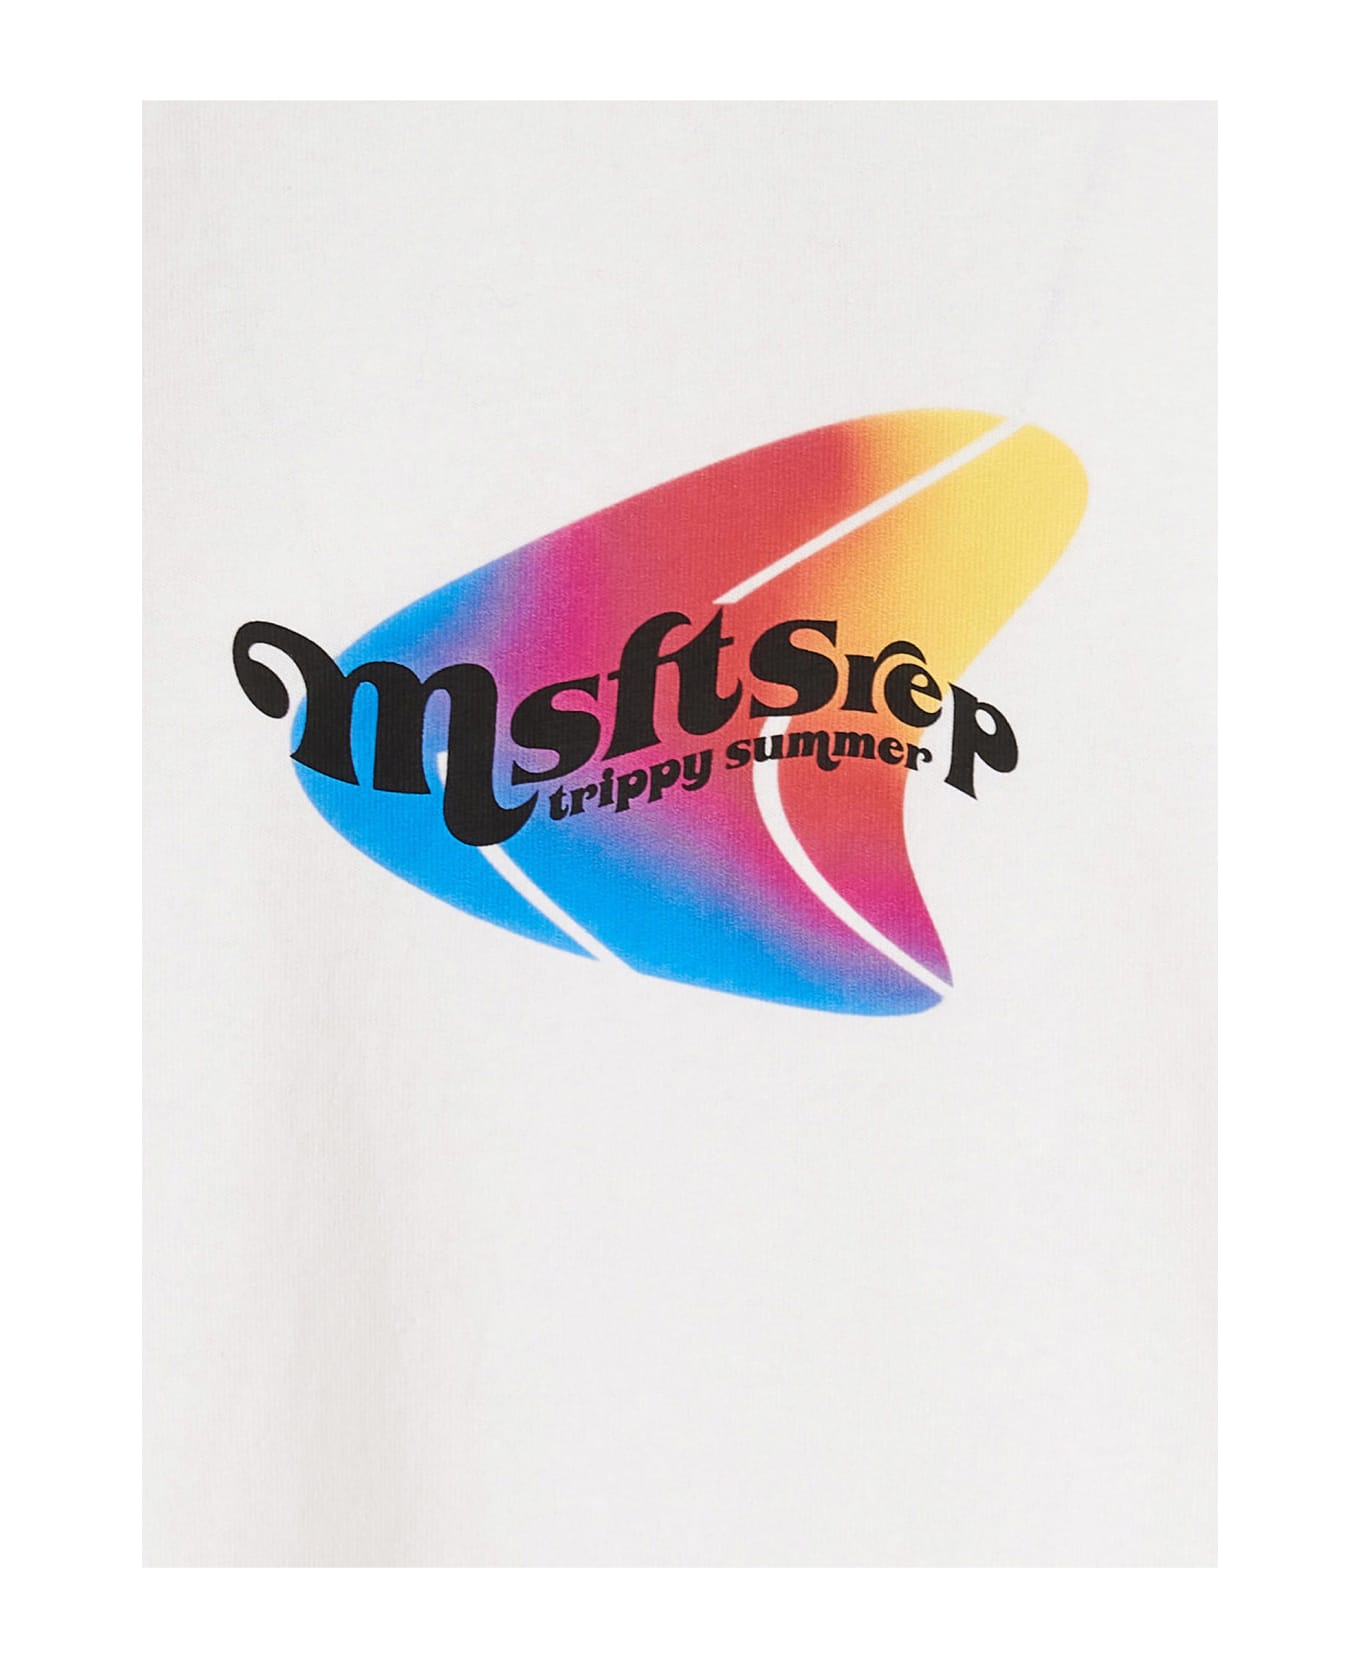 MSFTSrep Logo T-shirt - White シャツ